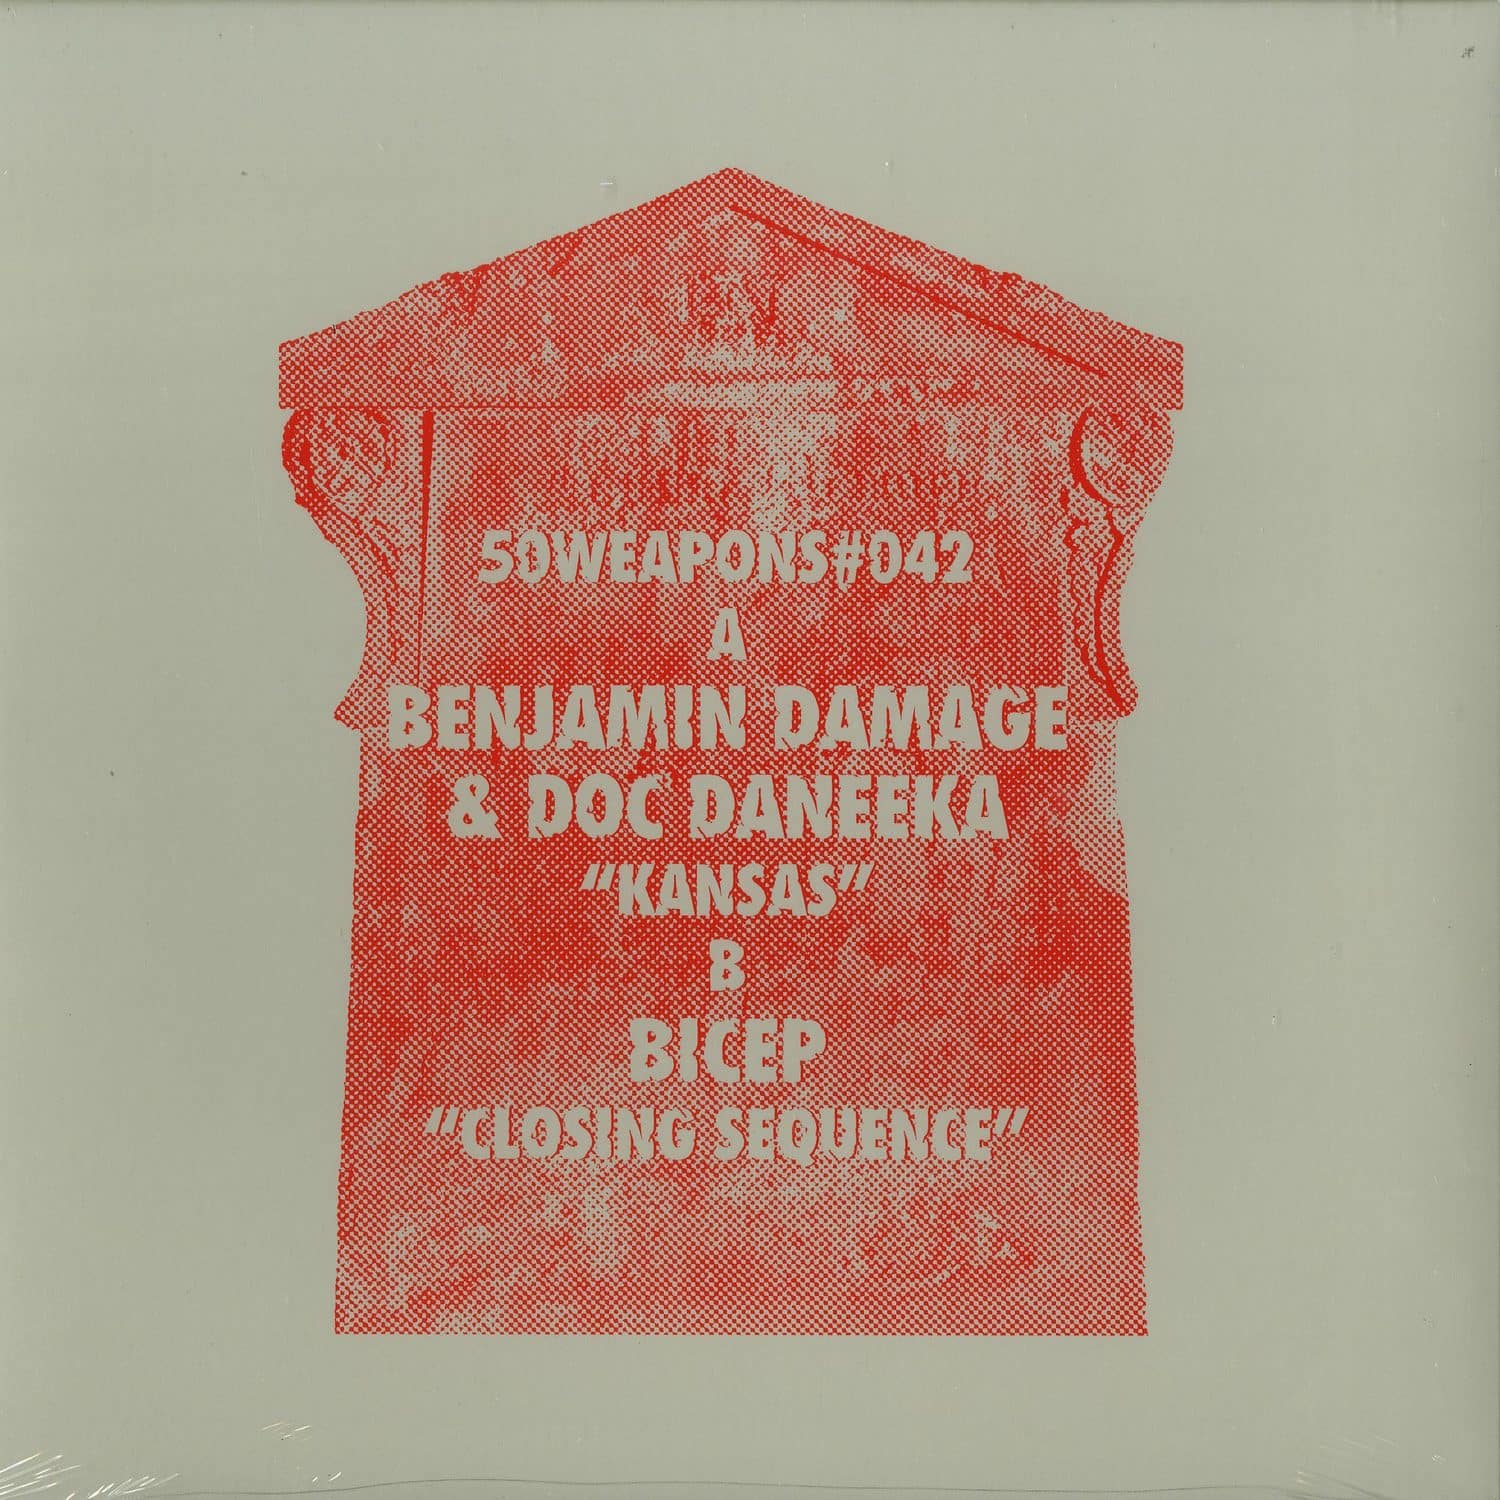 Benjamin Damage & Doc Daneeka / Bicep - KANSAS/CLOSING SEQUENCE 